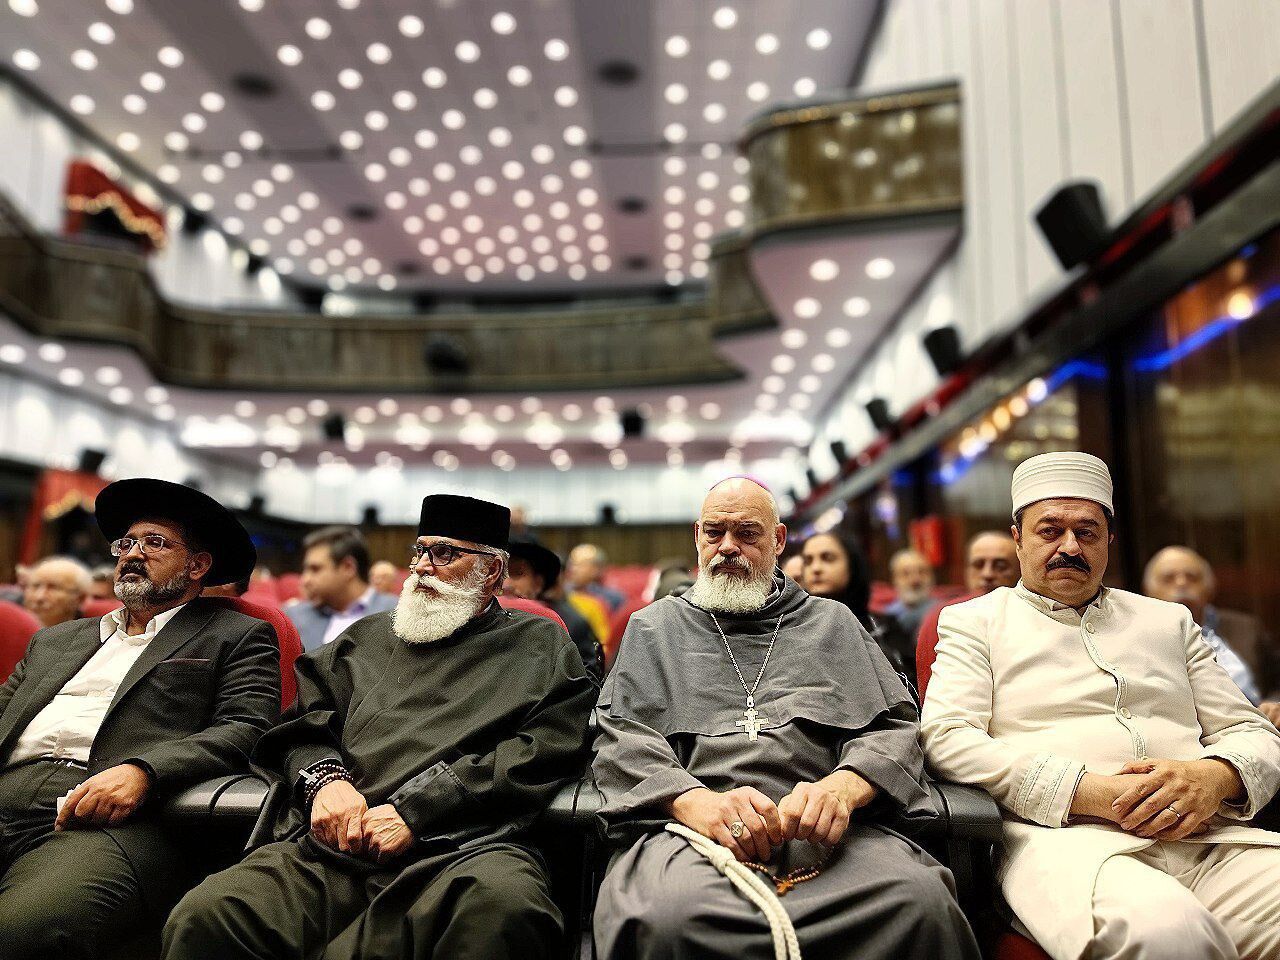 وزیر فرهنگ: ایران خانه پیروان همه ادیان توحیدی است/ احساس غریبگی با هم نداریم